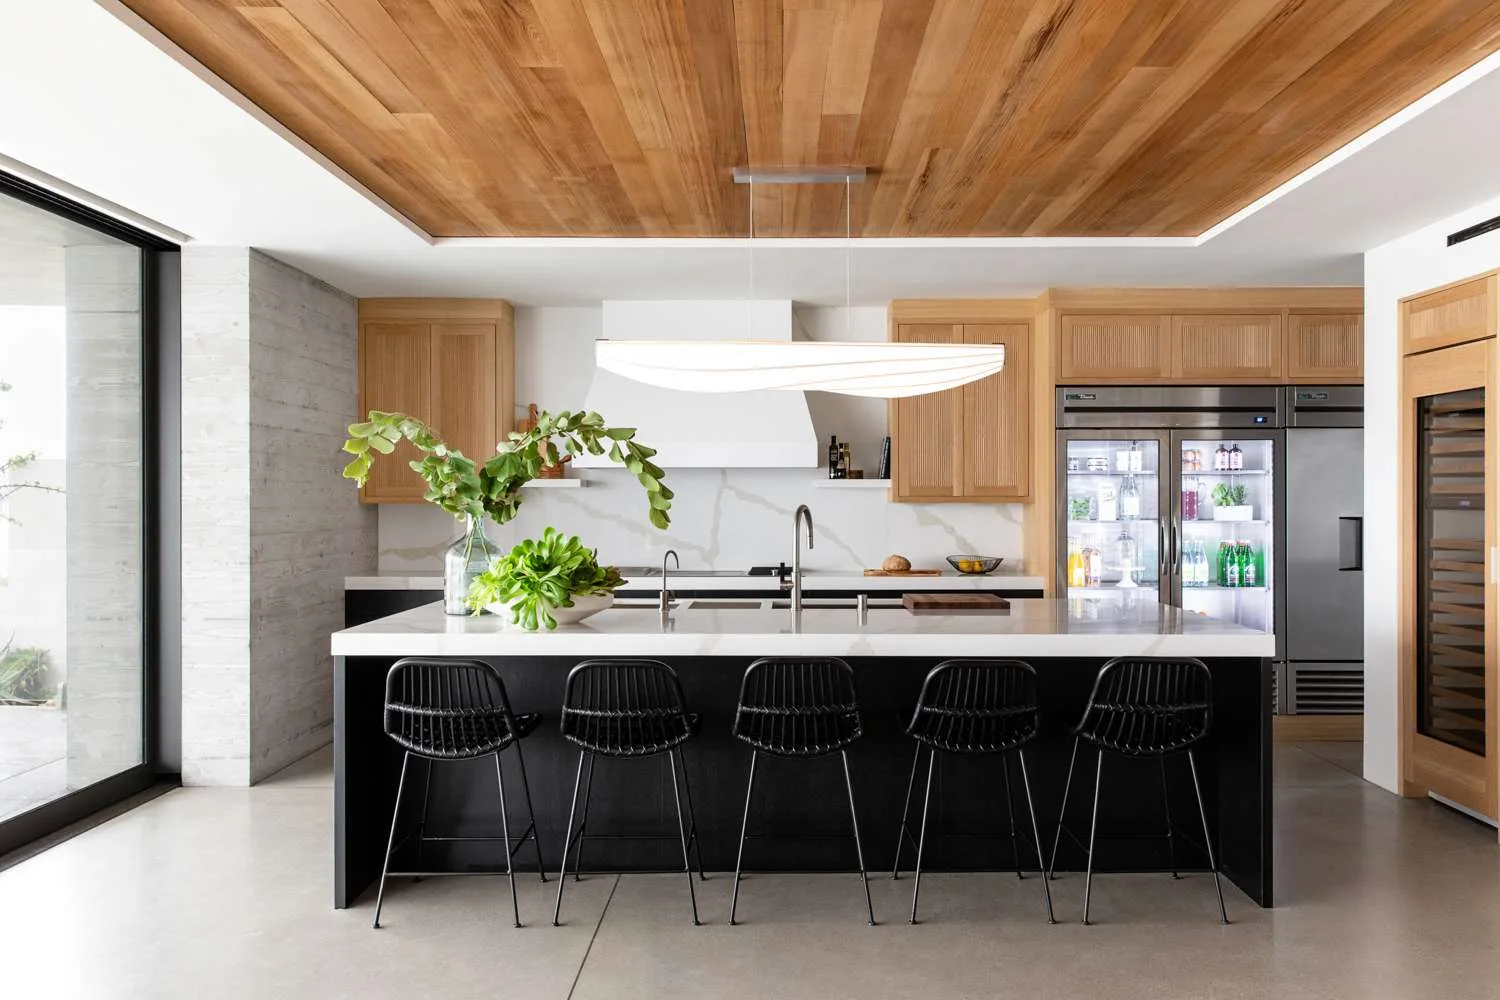 Không gian bếp hiện đại đơn giản với tone màu sáng